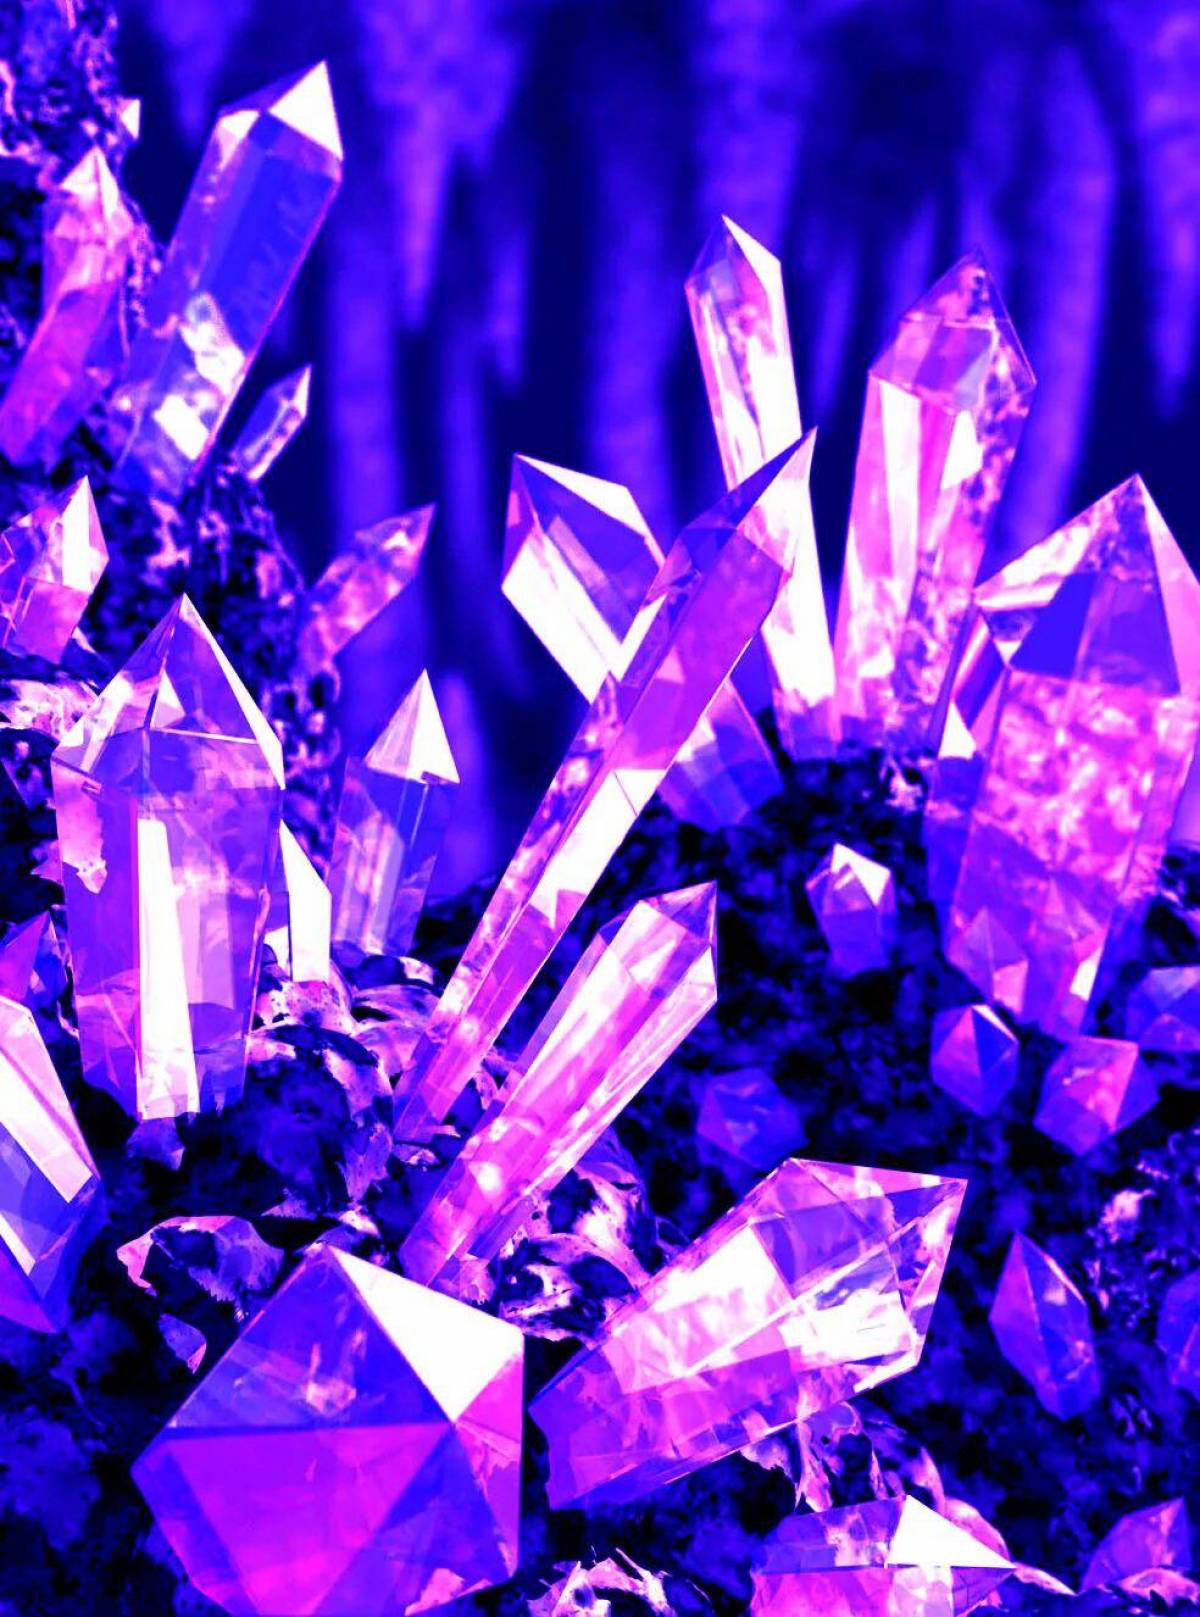 Many crystal